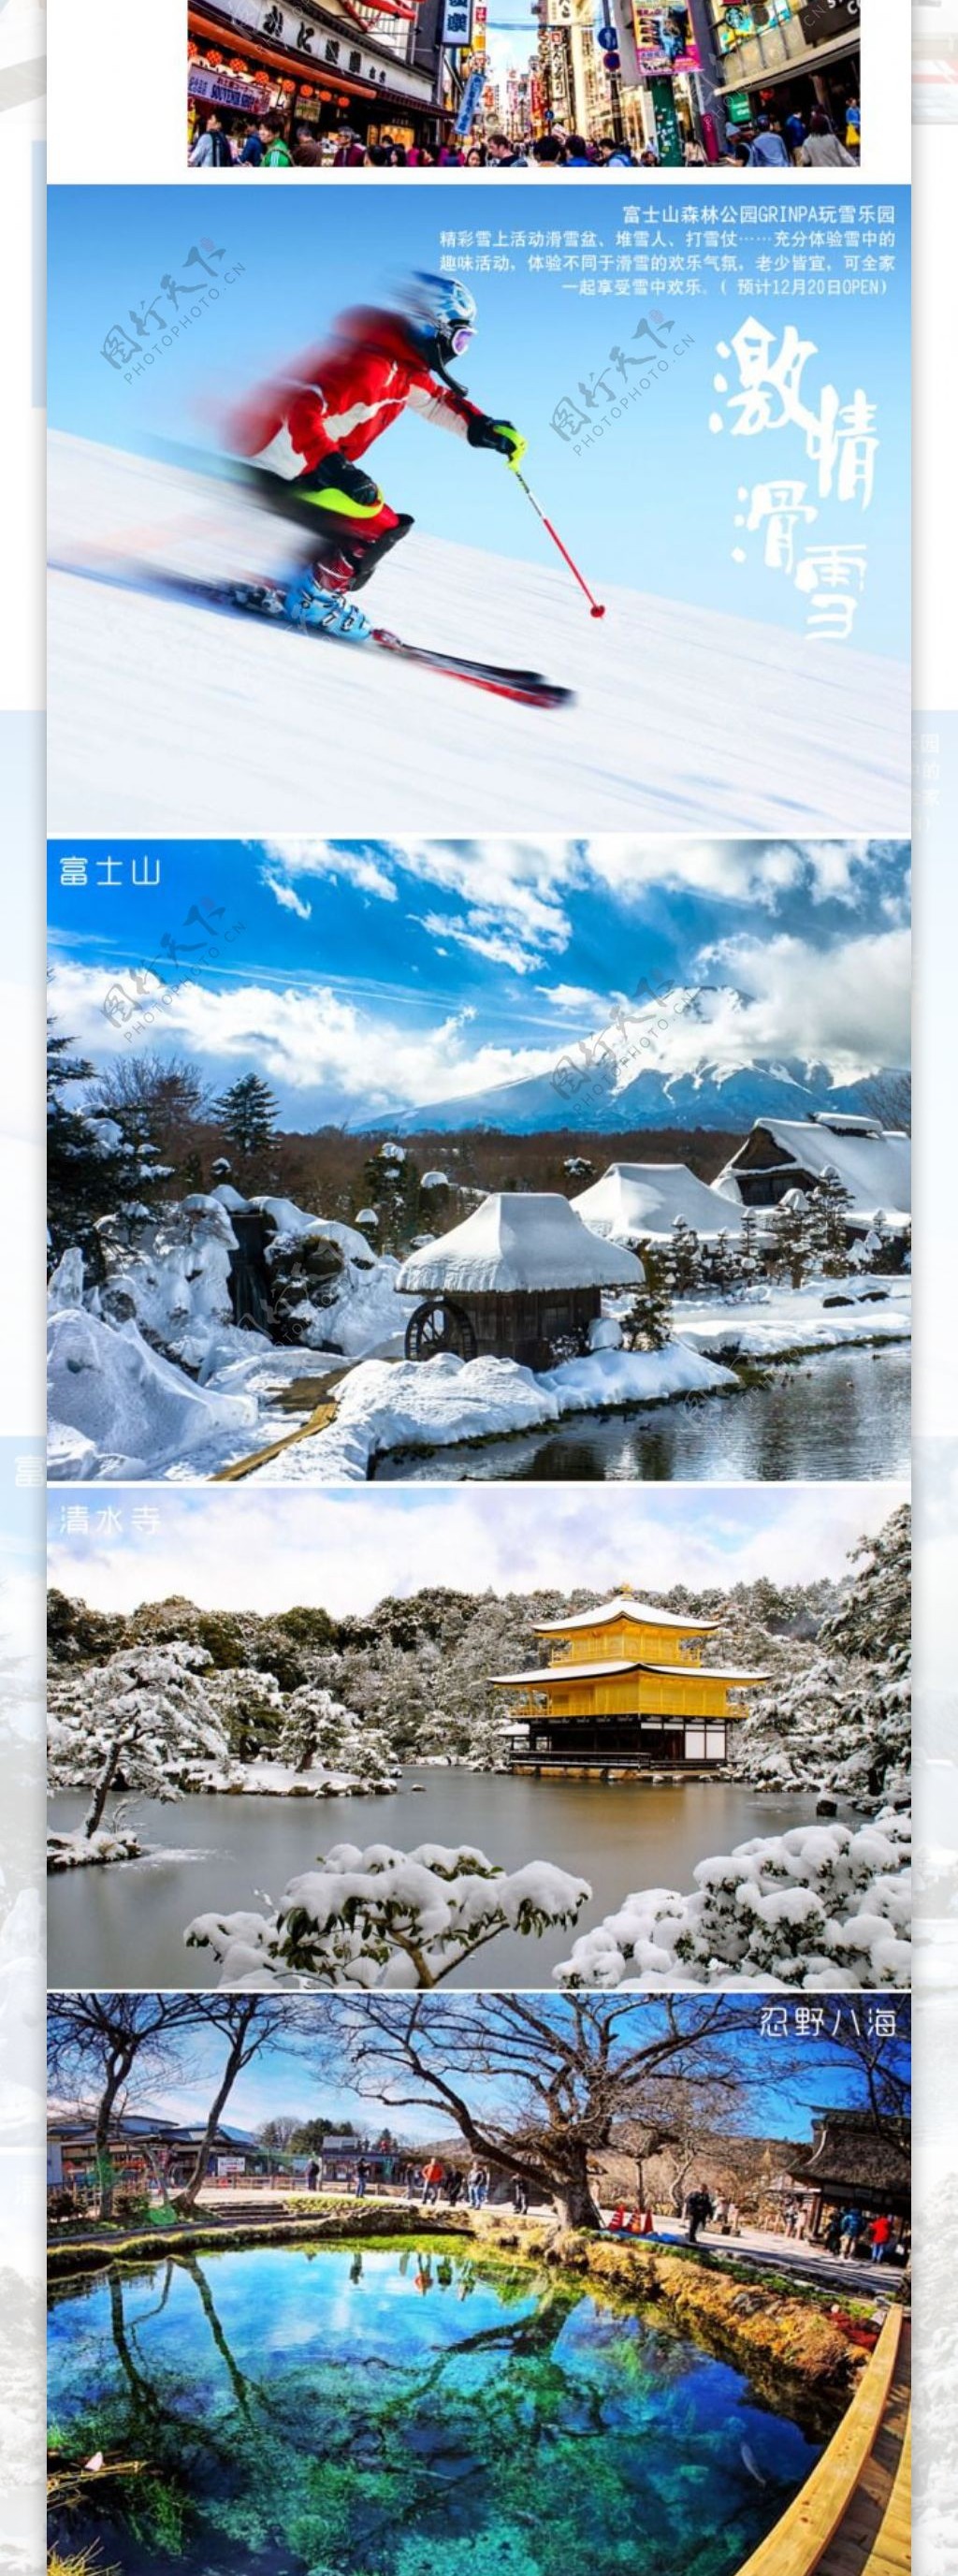 日本冰雪之旅日本旅游滑雪之旅幽梦轩